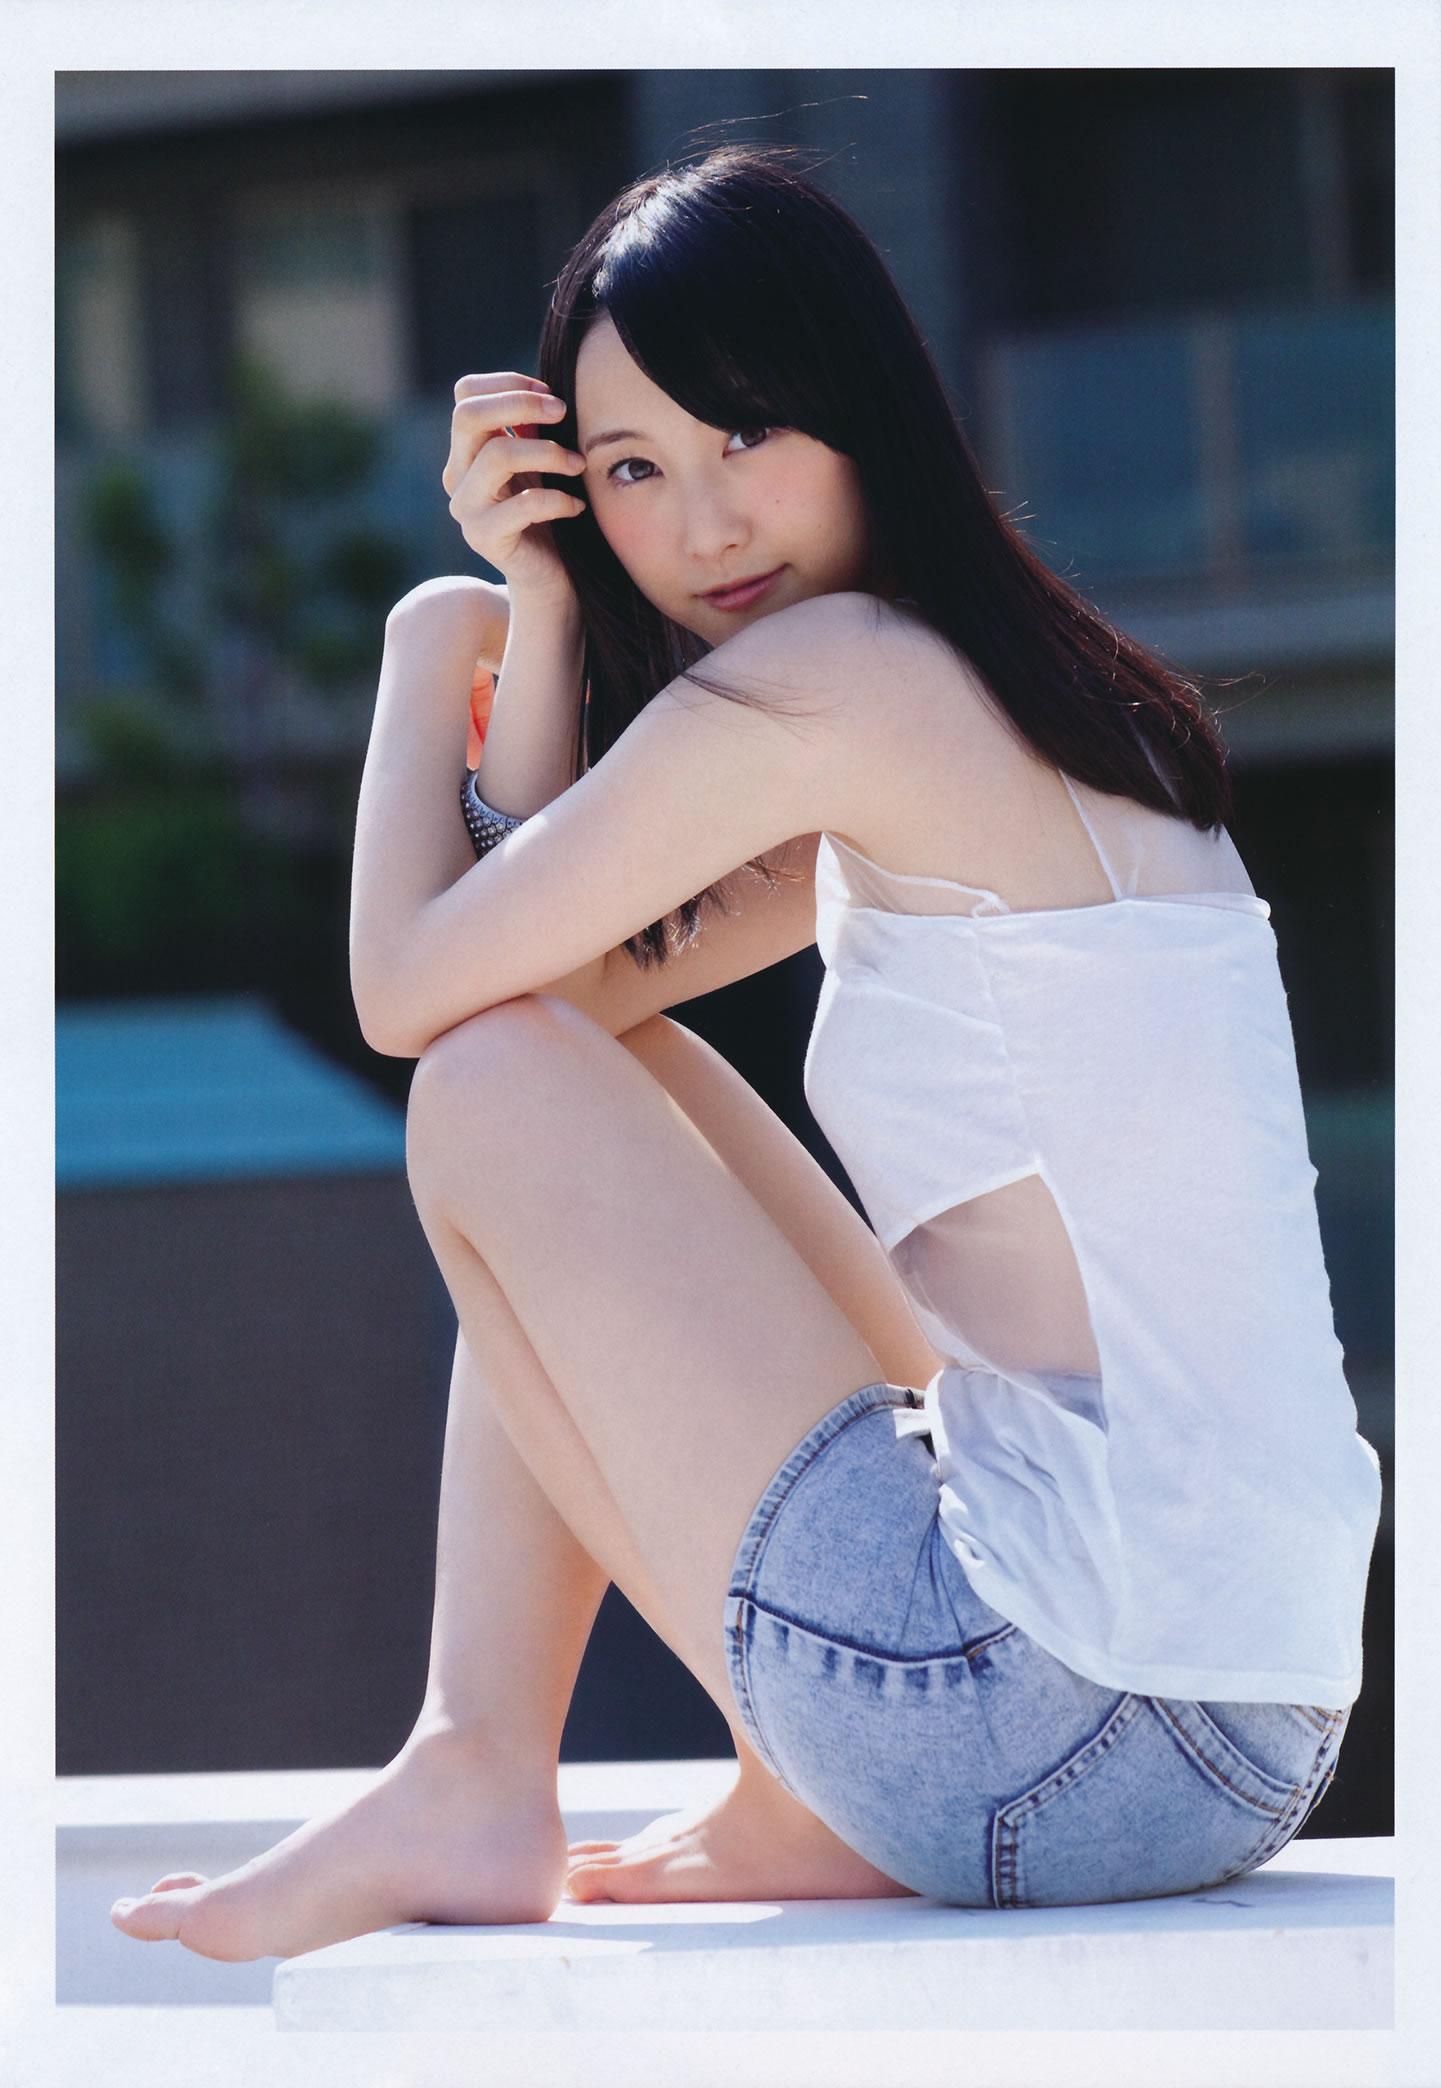 SKE48性感内衣高清写真图片,SKE48性感内衣高清写真图片